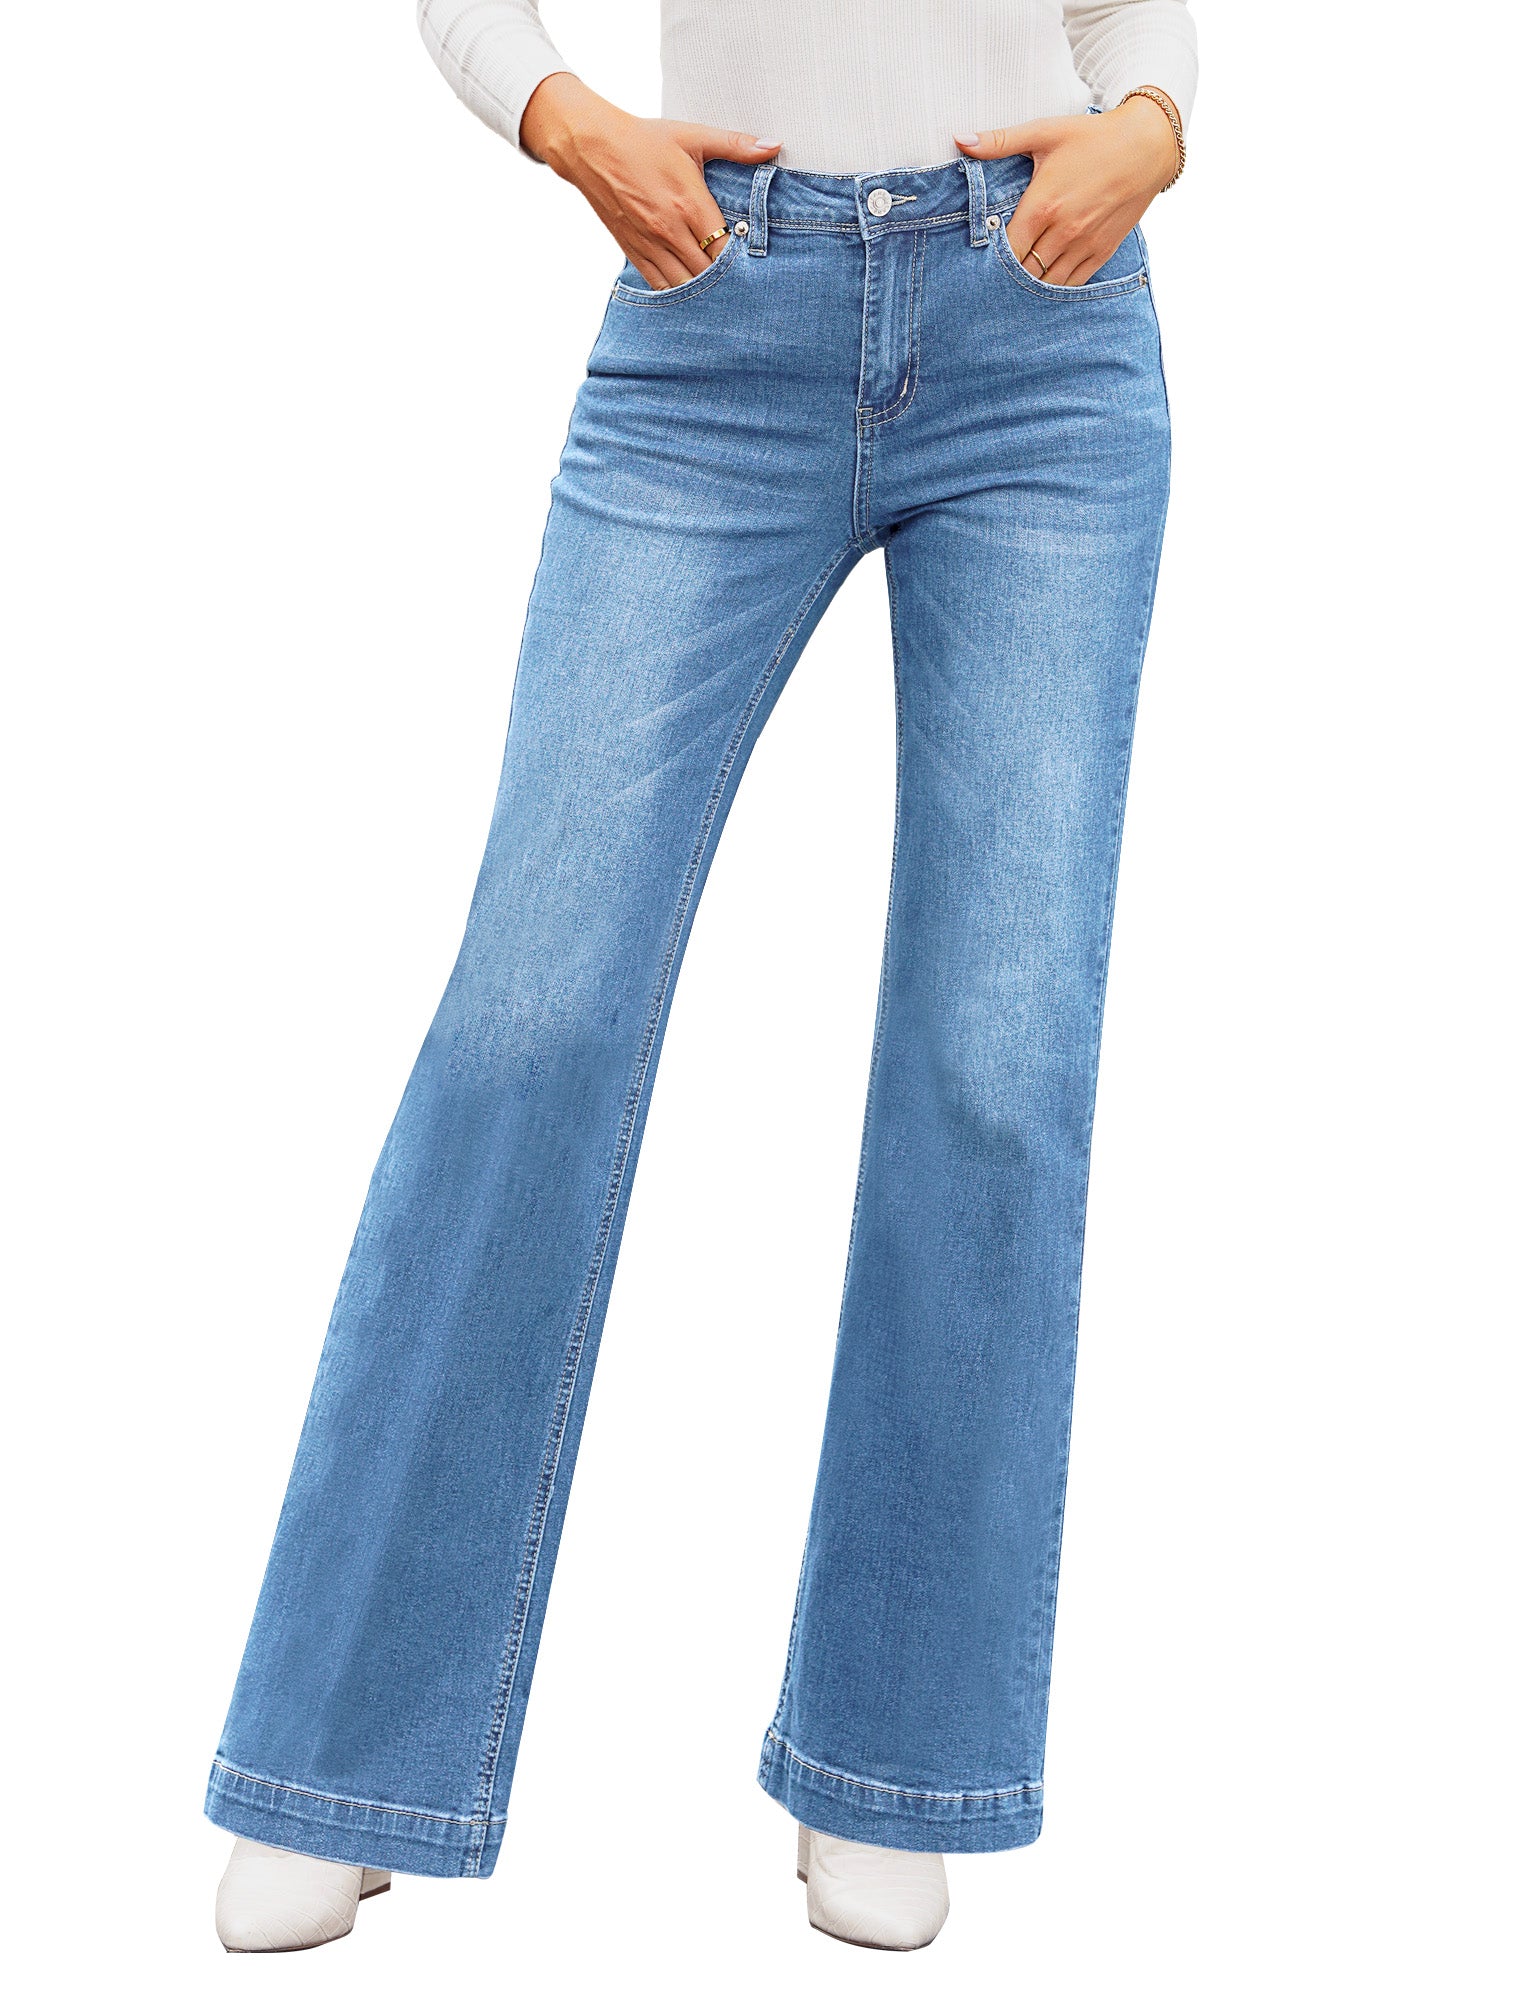 High Waisted Straight Fit Women's Denim Trousers -W3DM80Z8-507 -  W3DM80Z8-507 - LC Waikiki